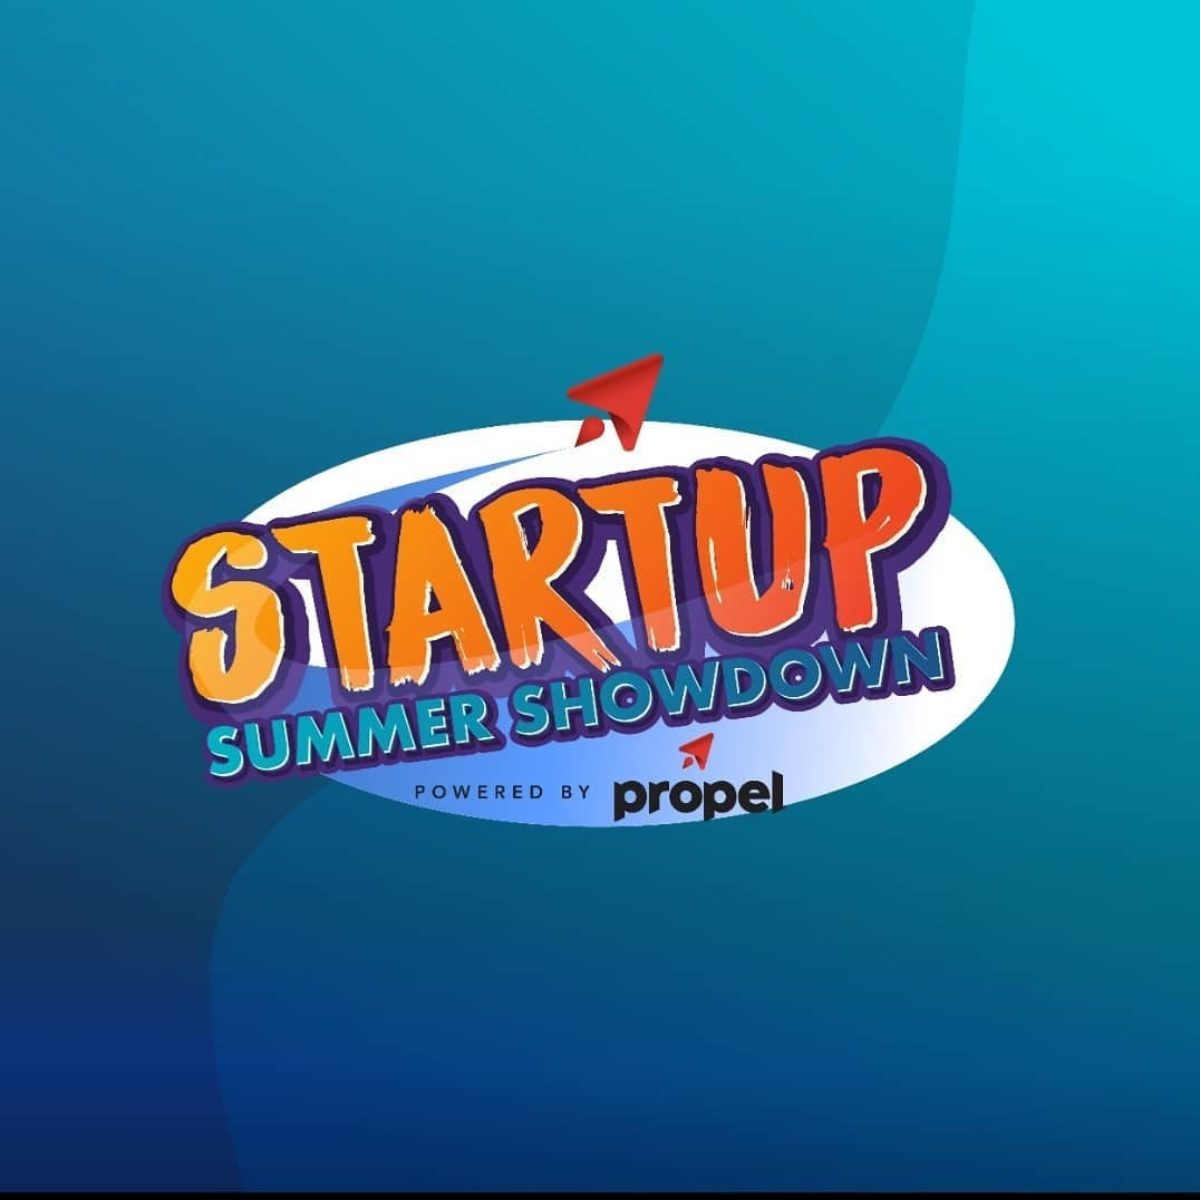 Propel ict startup summer showdown